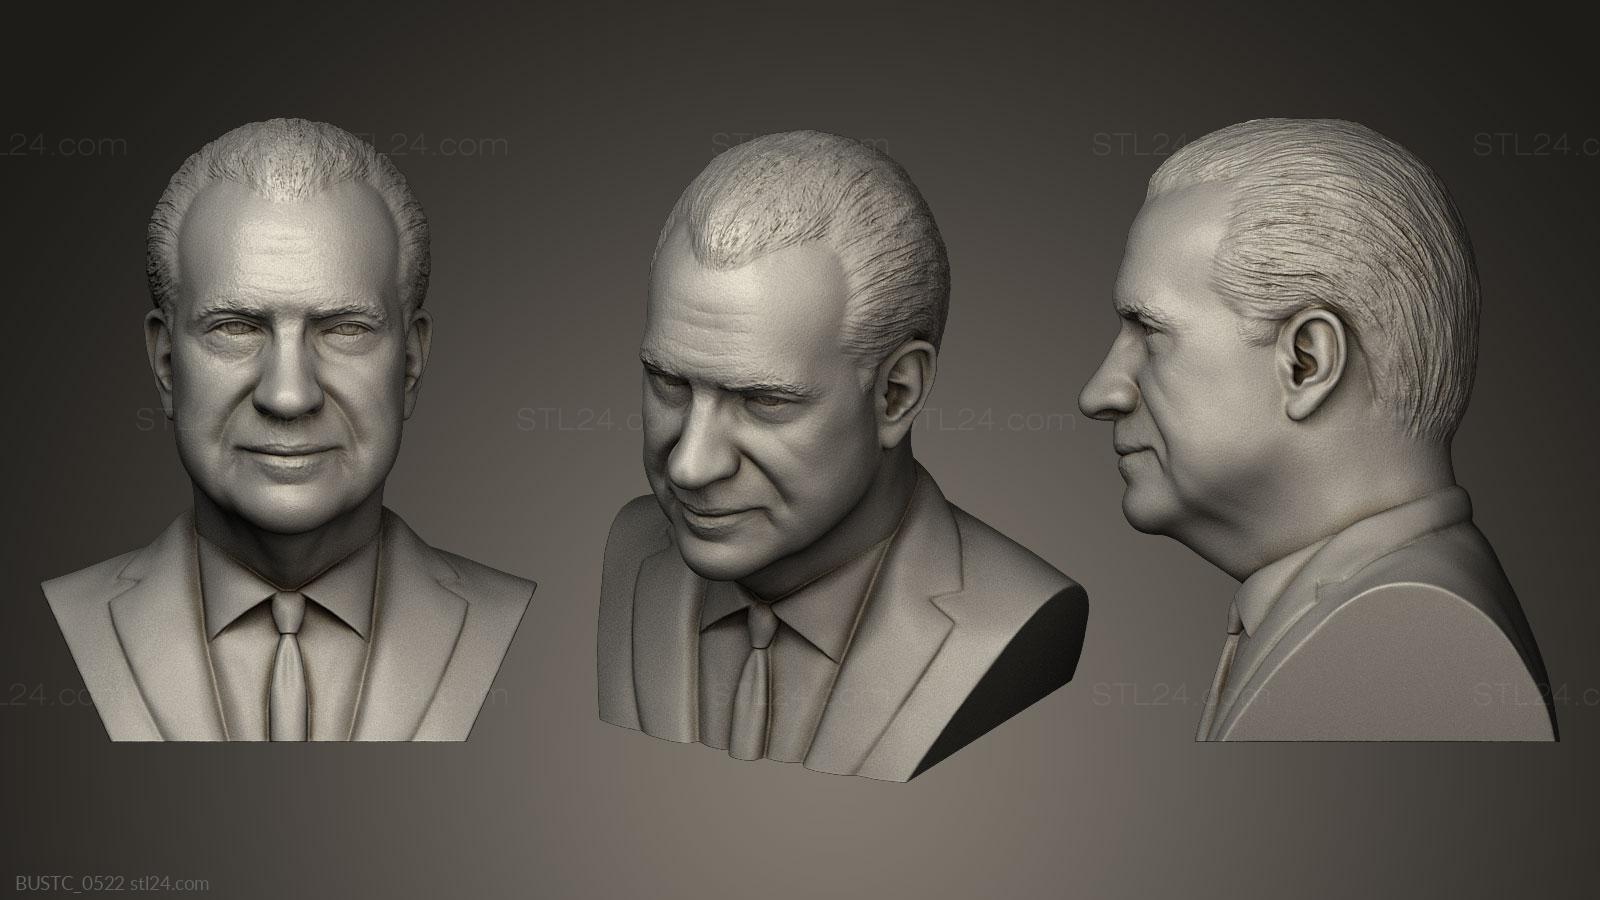 Бюсты и барельефы известных личностей (Ричард Никсон, BUSTC_0522) 3D модель для ЧПУ станка